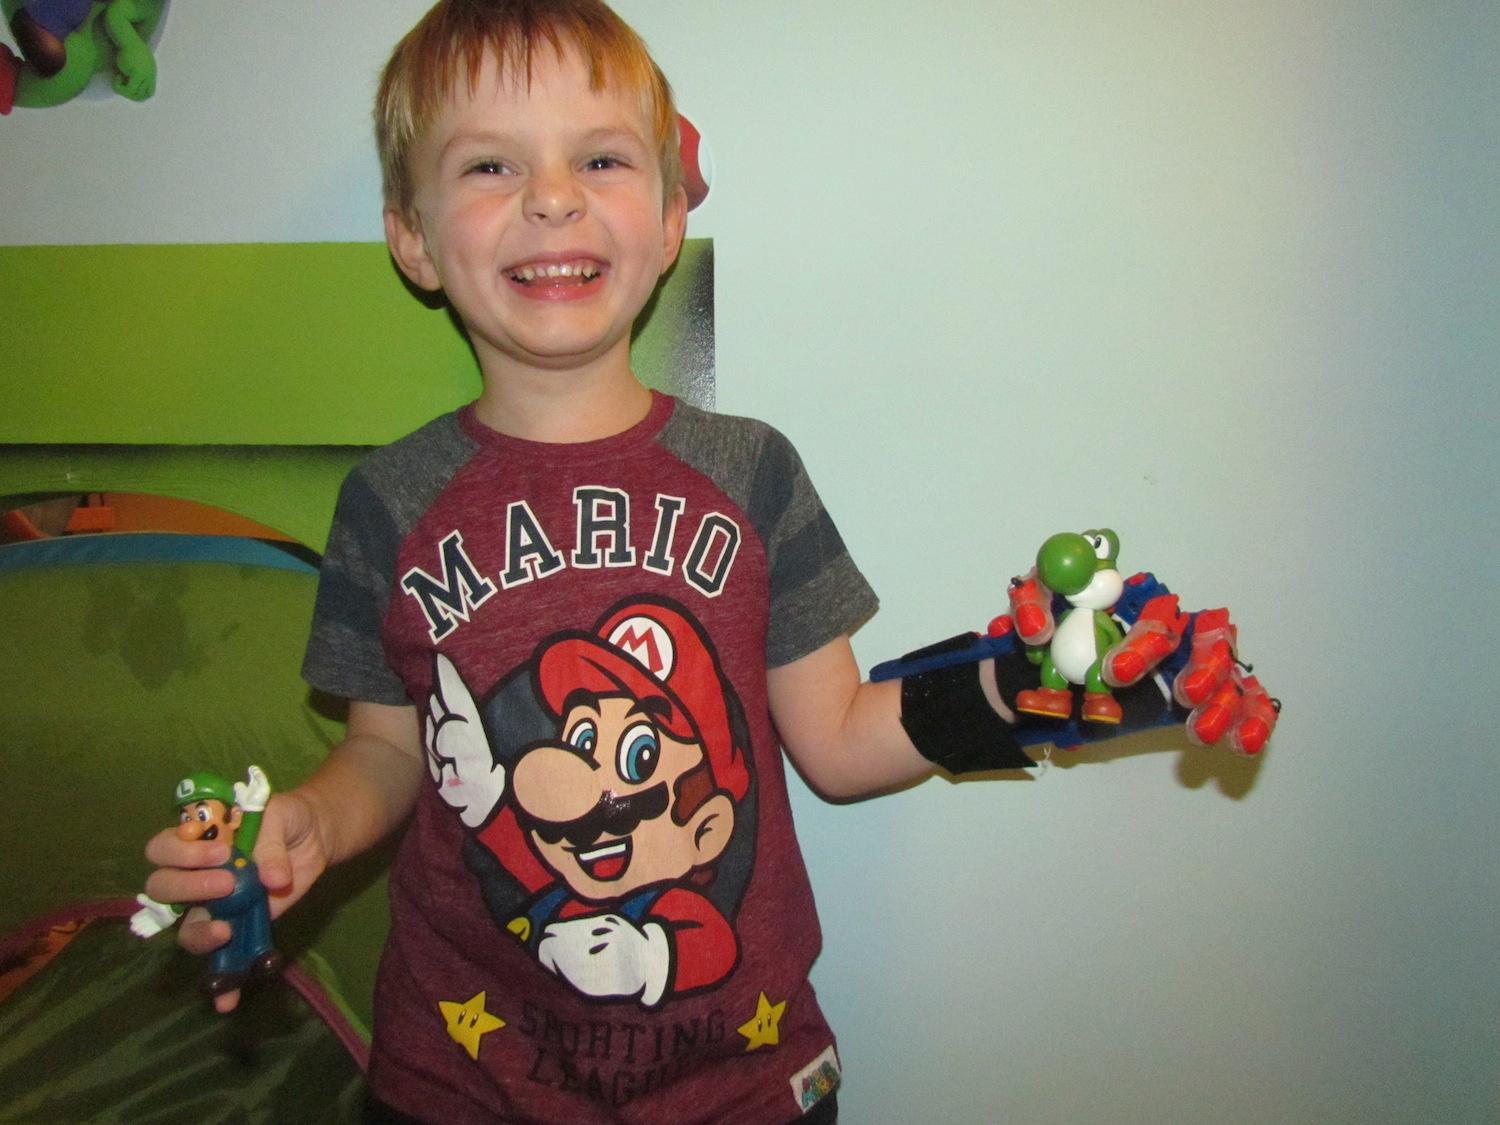 Antoni med sin Super Mario-gubbe Äntligen! Så här glad blir man när man är 6 år, saknar en hand, men precis fått en 3D-protes och för första gången kan greppa en leksak i varje hand. Antoni Rudd i Polen.